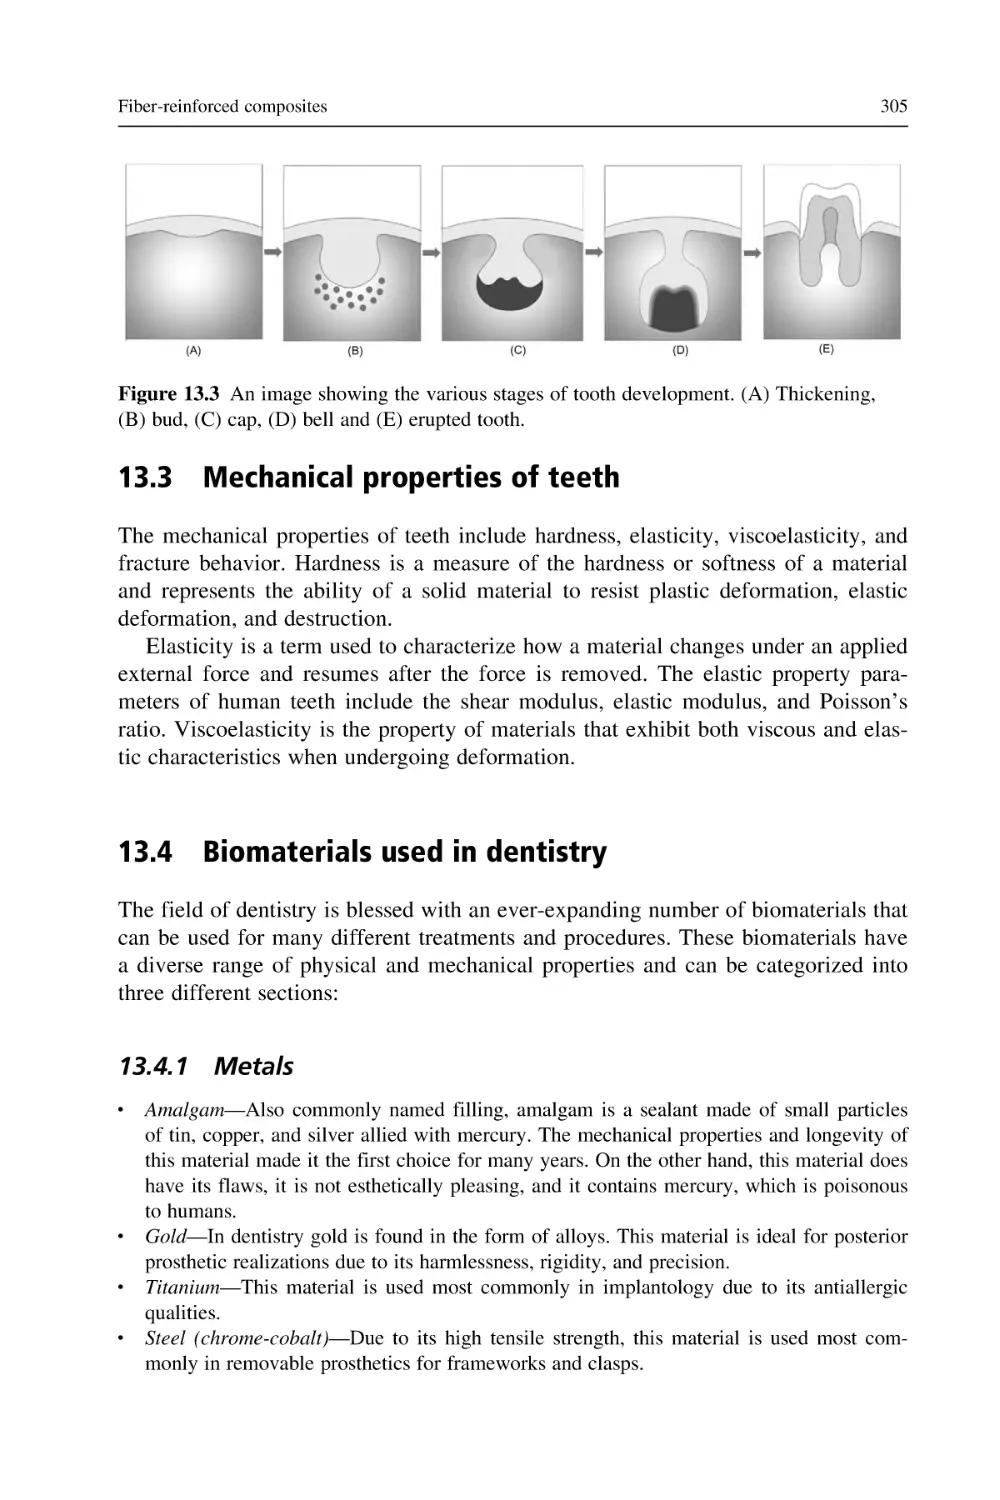 13.3 Mechanical properties of teeth
13.4 Biomaterials used in dentistry
13.4.1 Metals